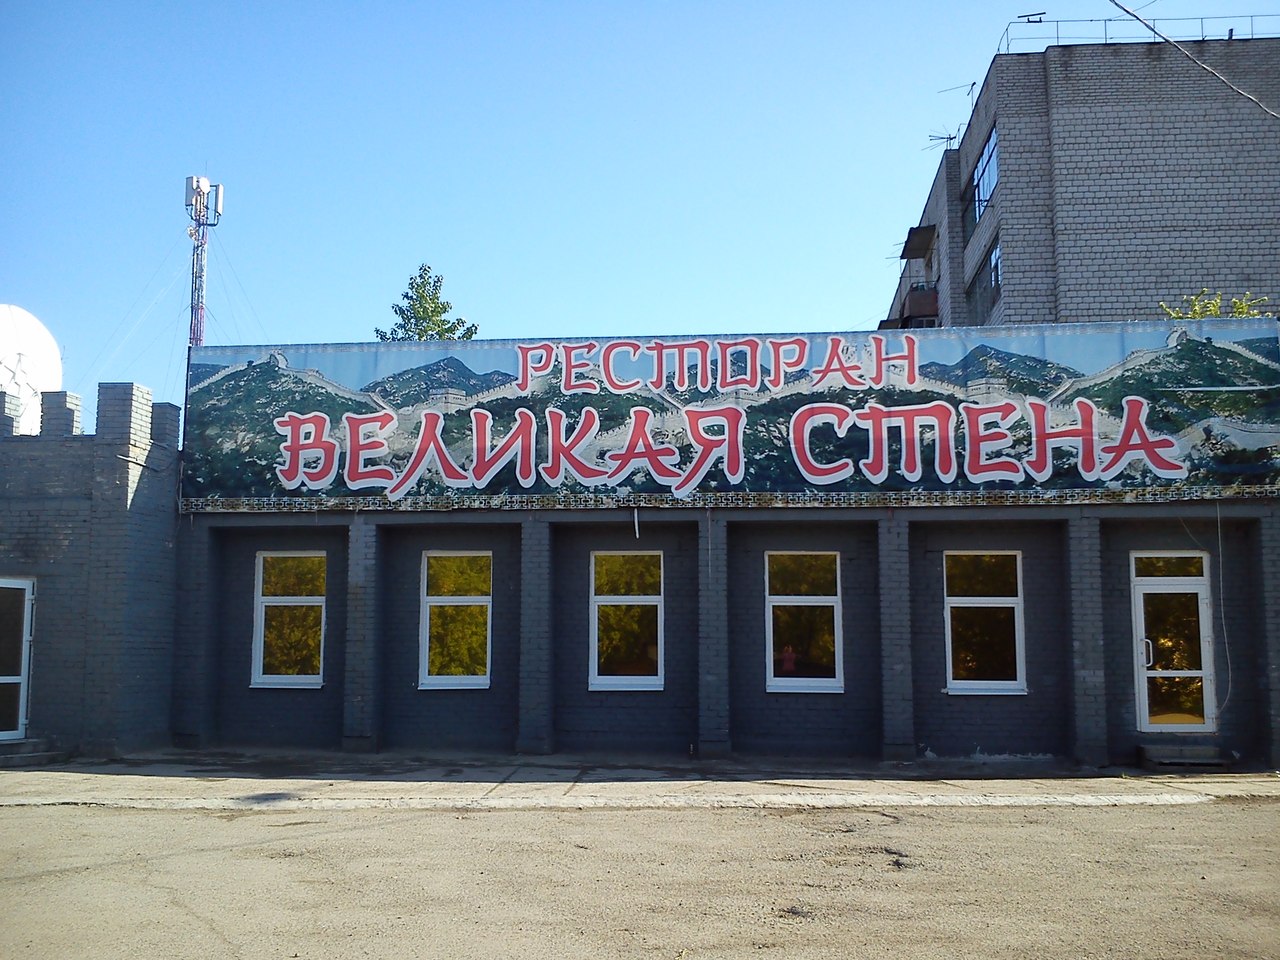 В Перми закрылся единственный ресторан китайской кухни «Великая стена»